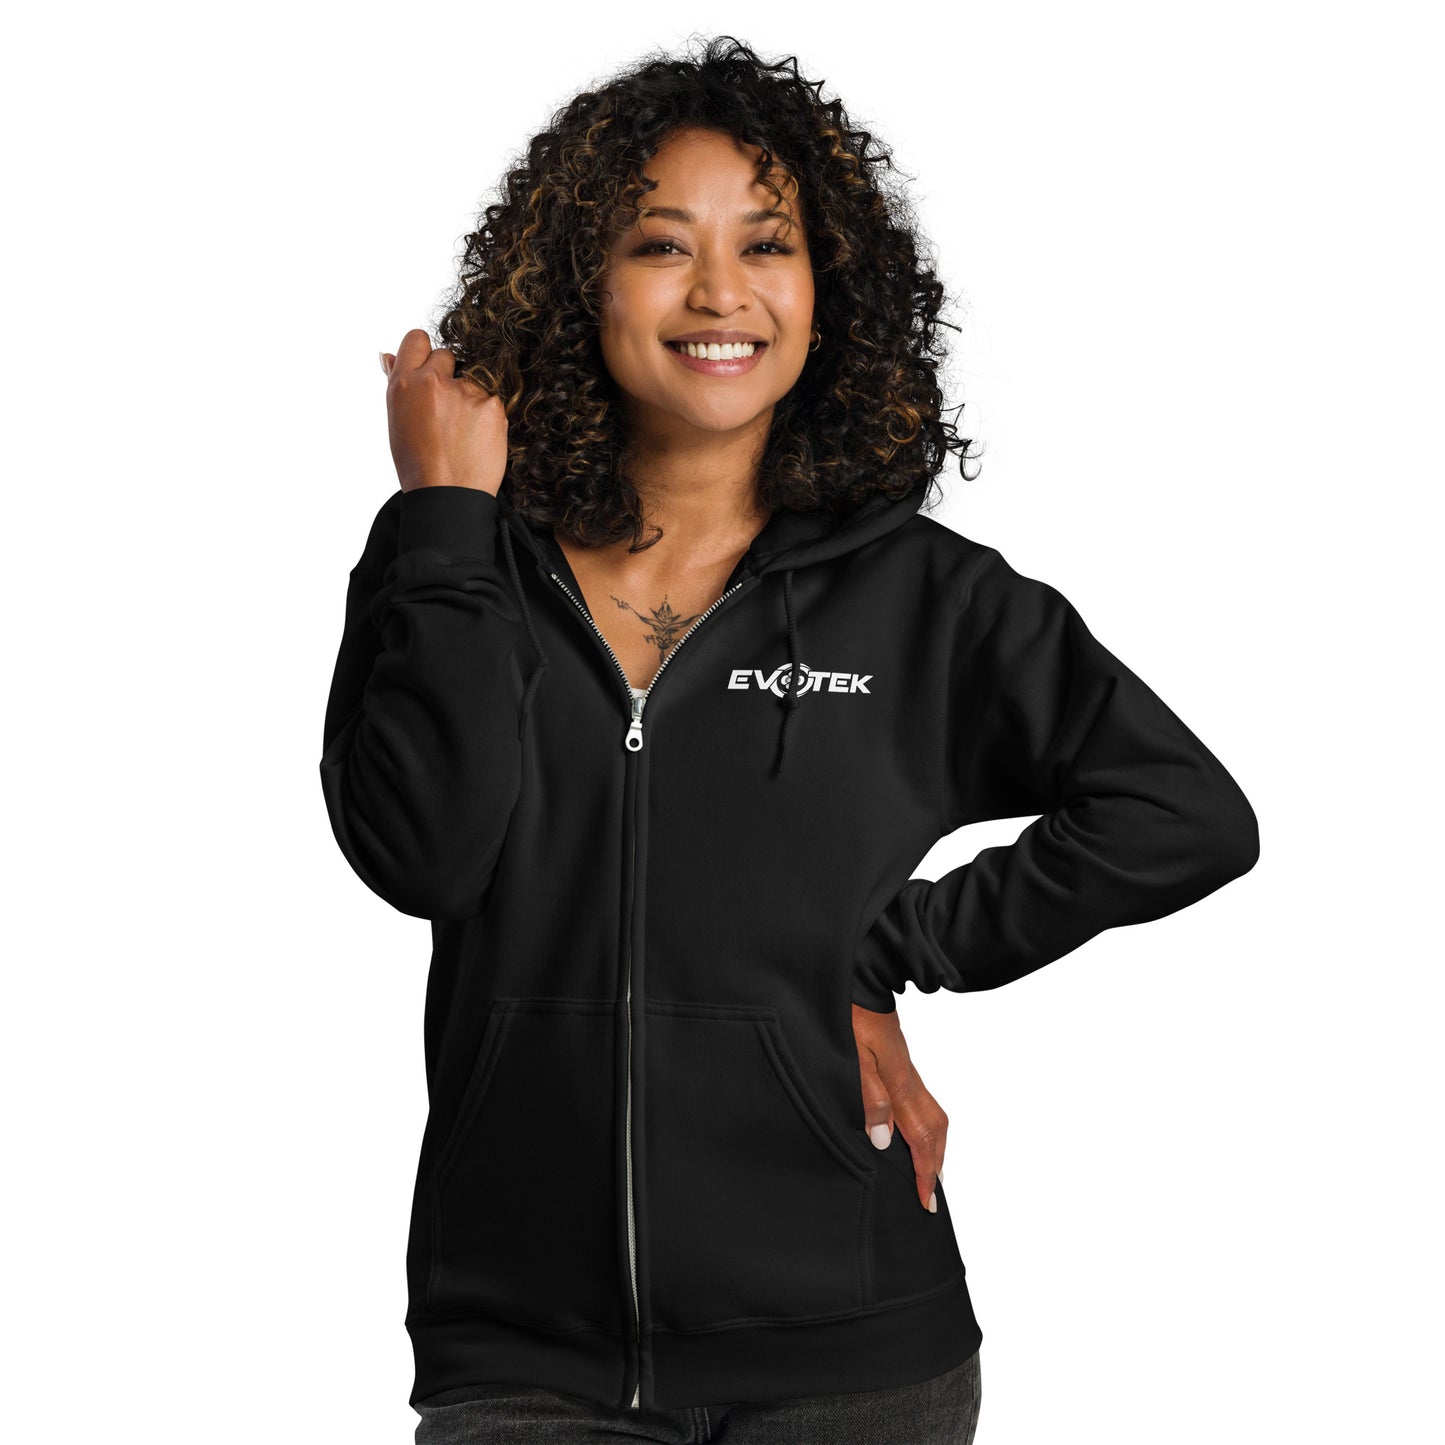 Unisex heavy blend black zip hoodie